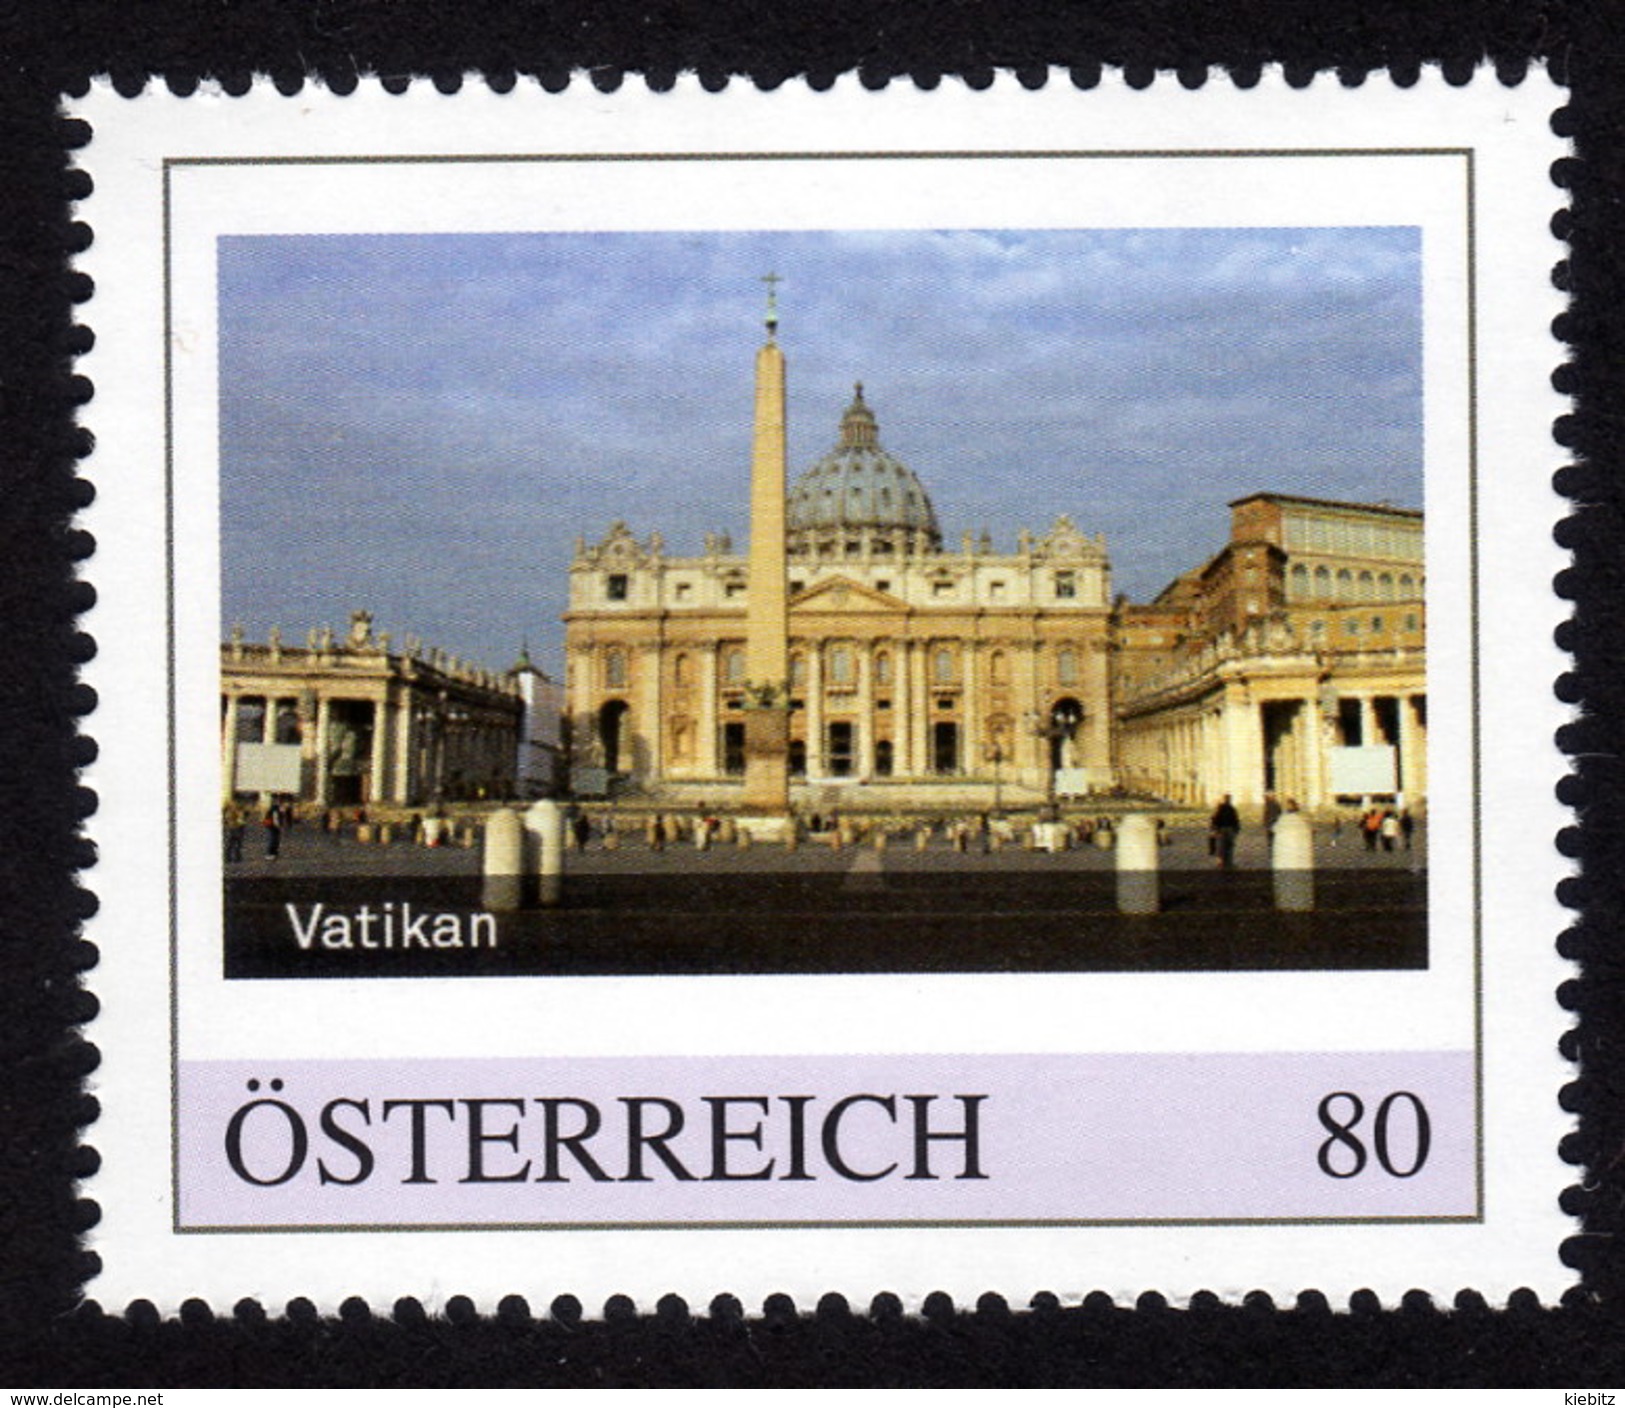 ÖSTERREICH 2015 ** Wallfahrtsort Vatikan - PM Personalized Stamp MNH - Kirchen U. Kathedralen